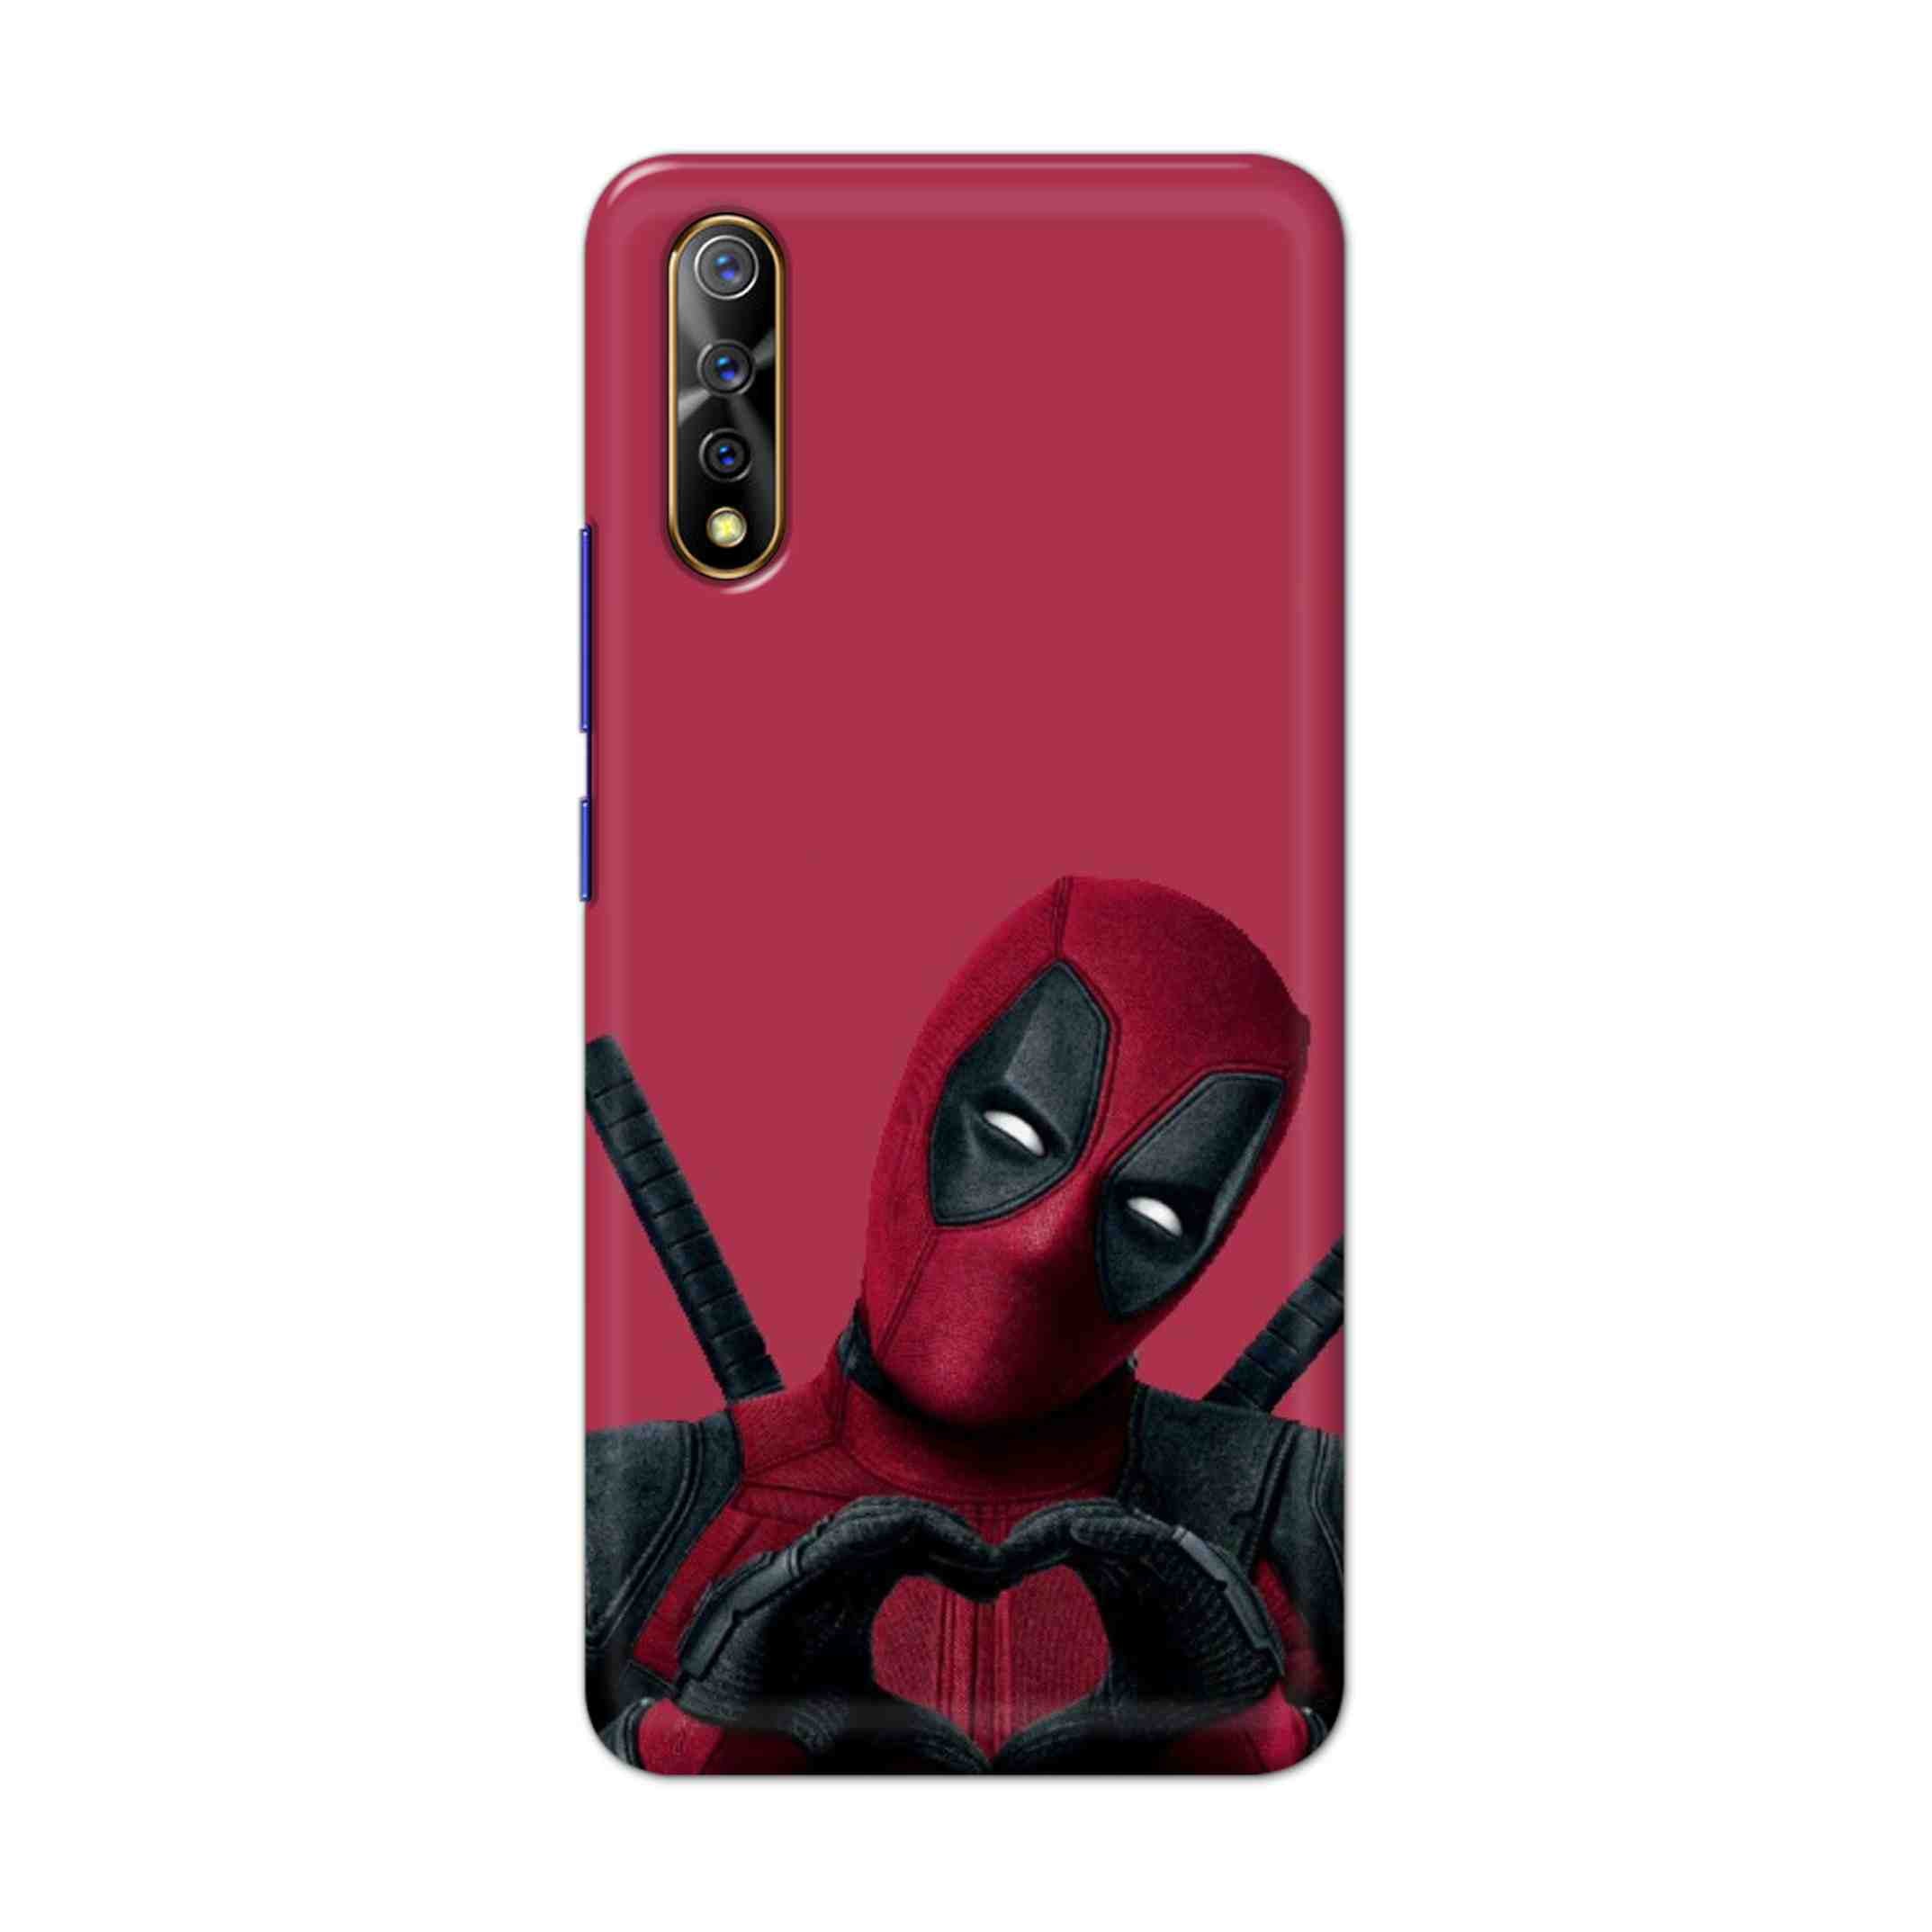 Buy Deadpool Heart Hard Back Mobile Phone Case Cover For Vivo S1 / Z1x Online